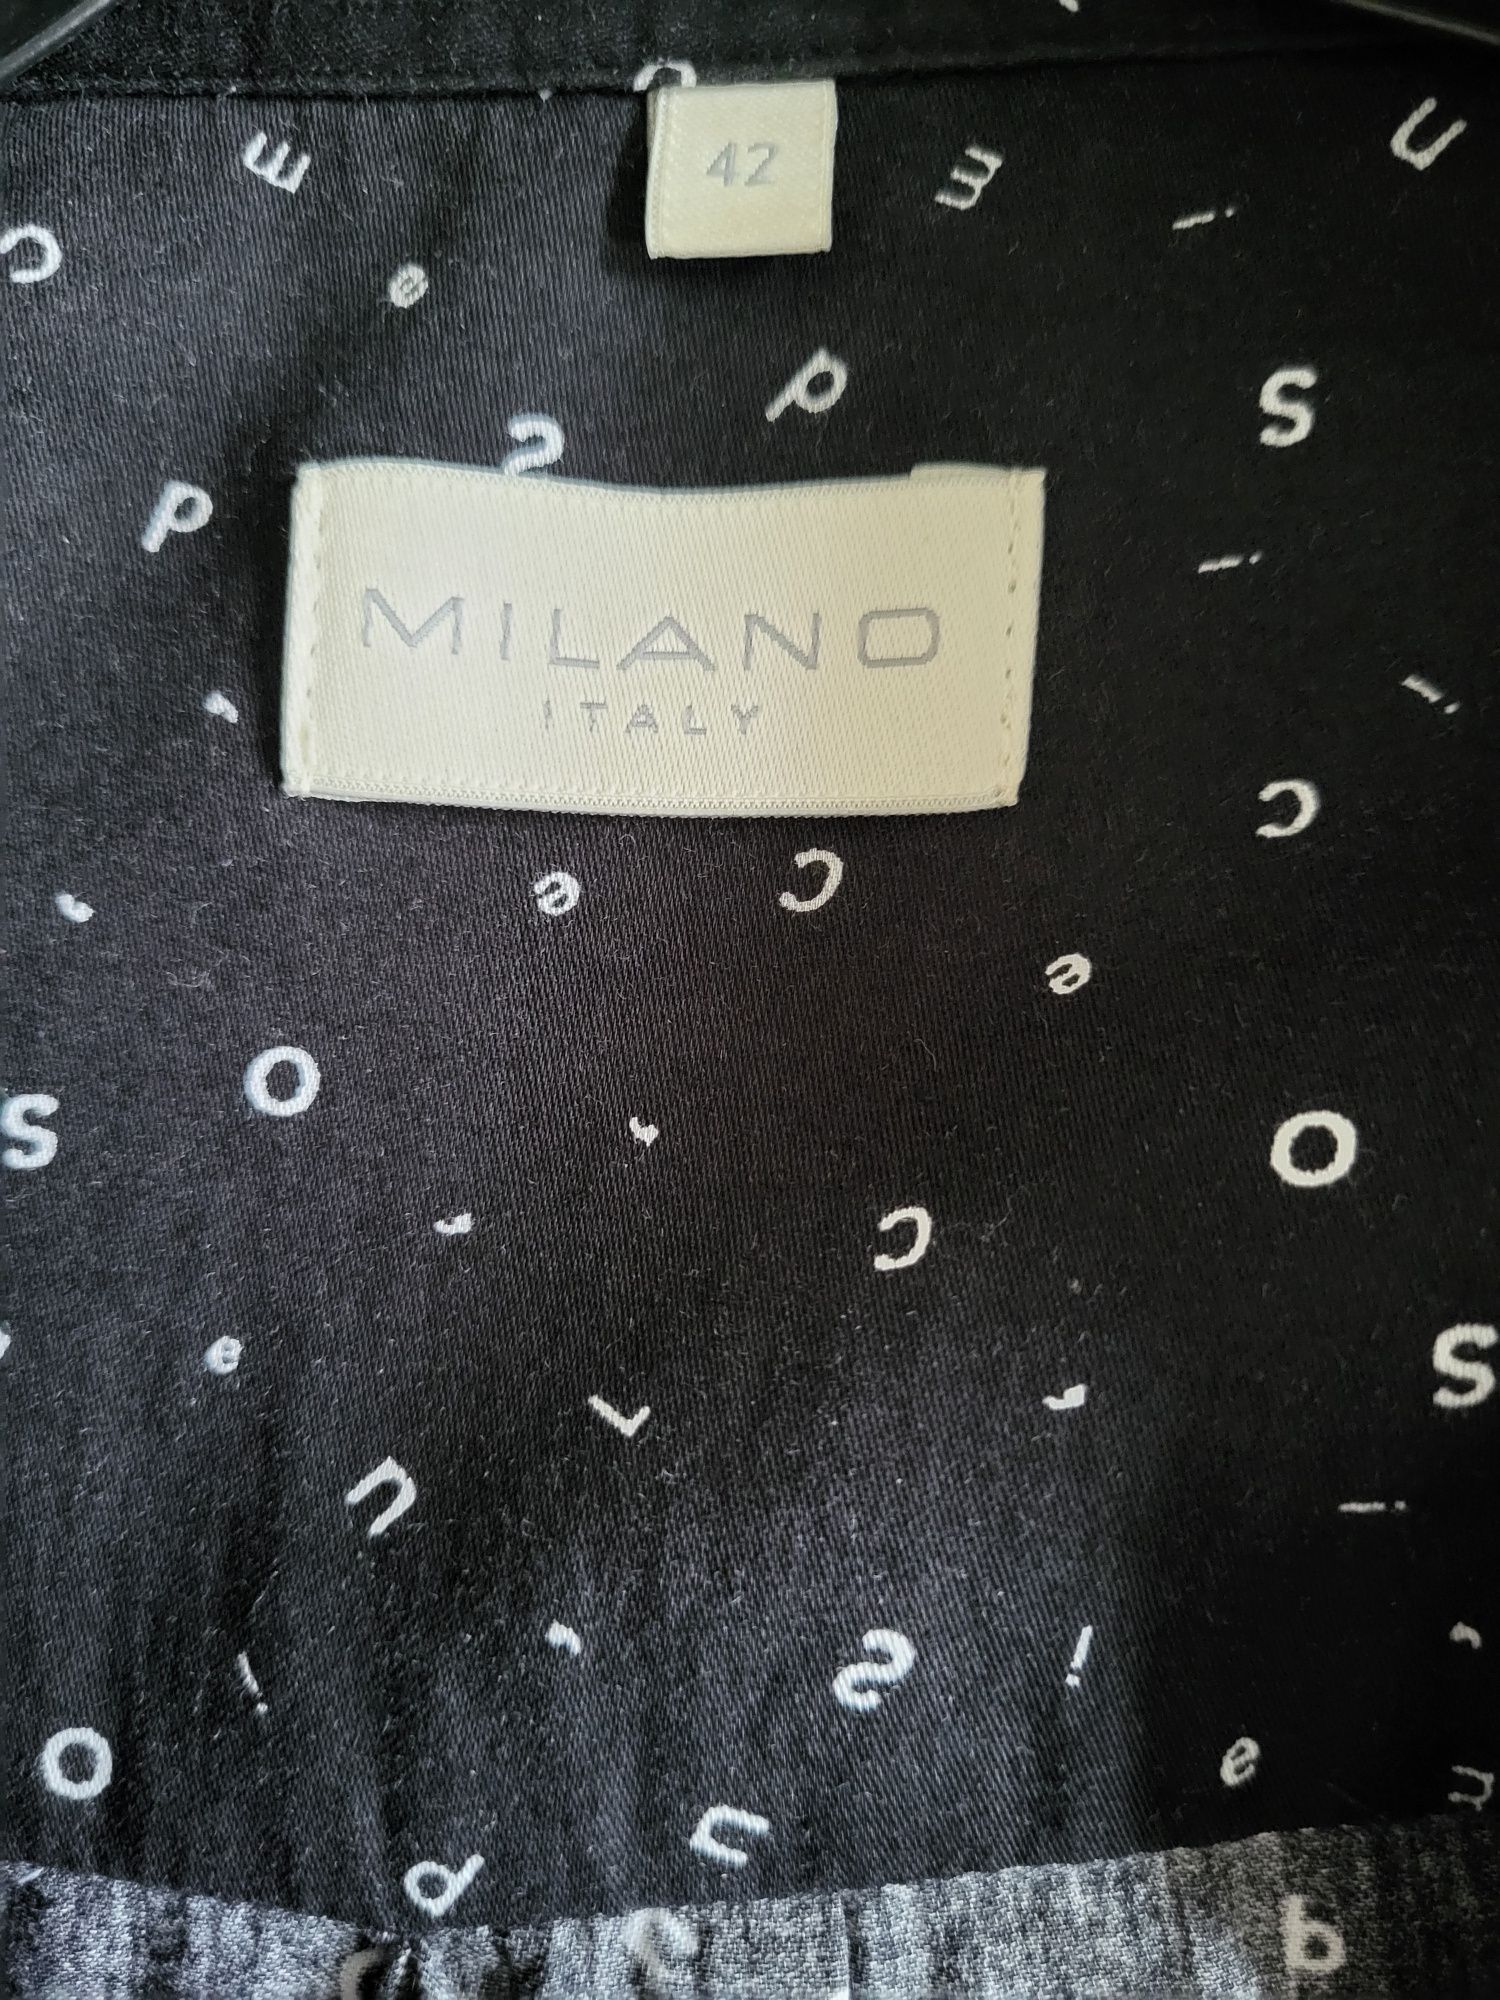 MILANO Italy czarna koszula w białe literki r.42+ gratis